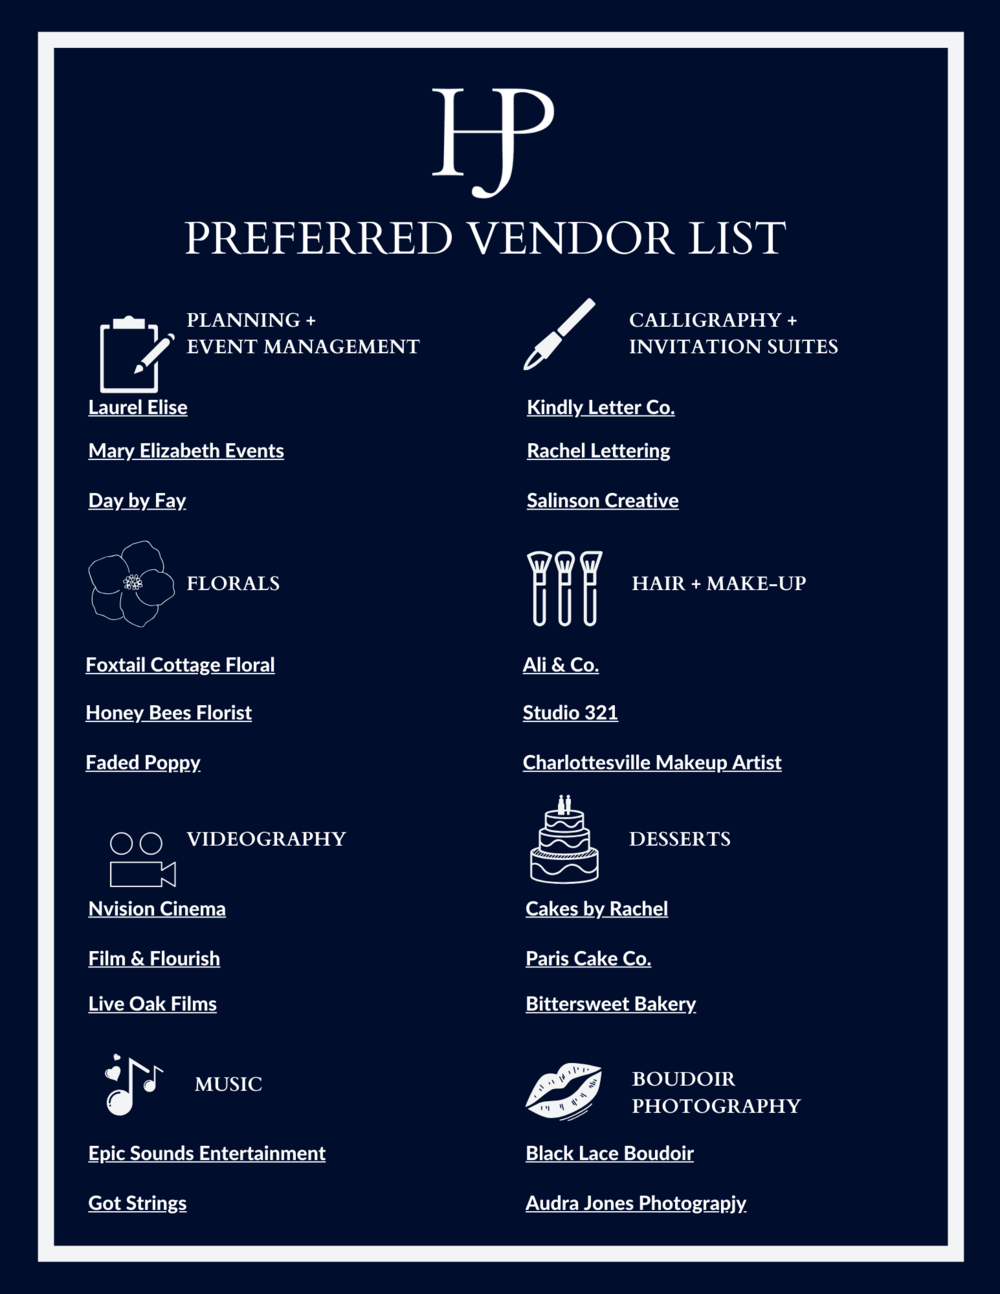 HJP Preferred Vendor List.png